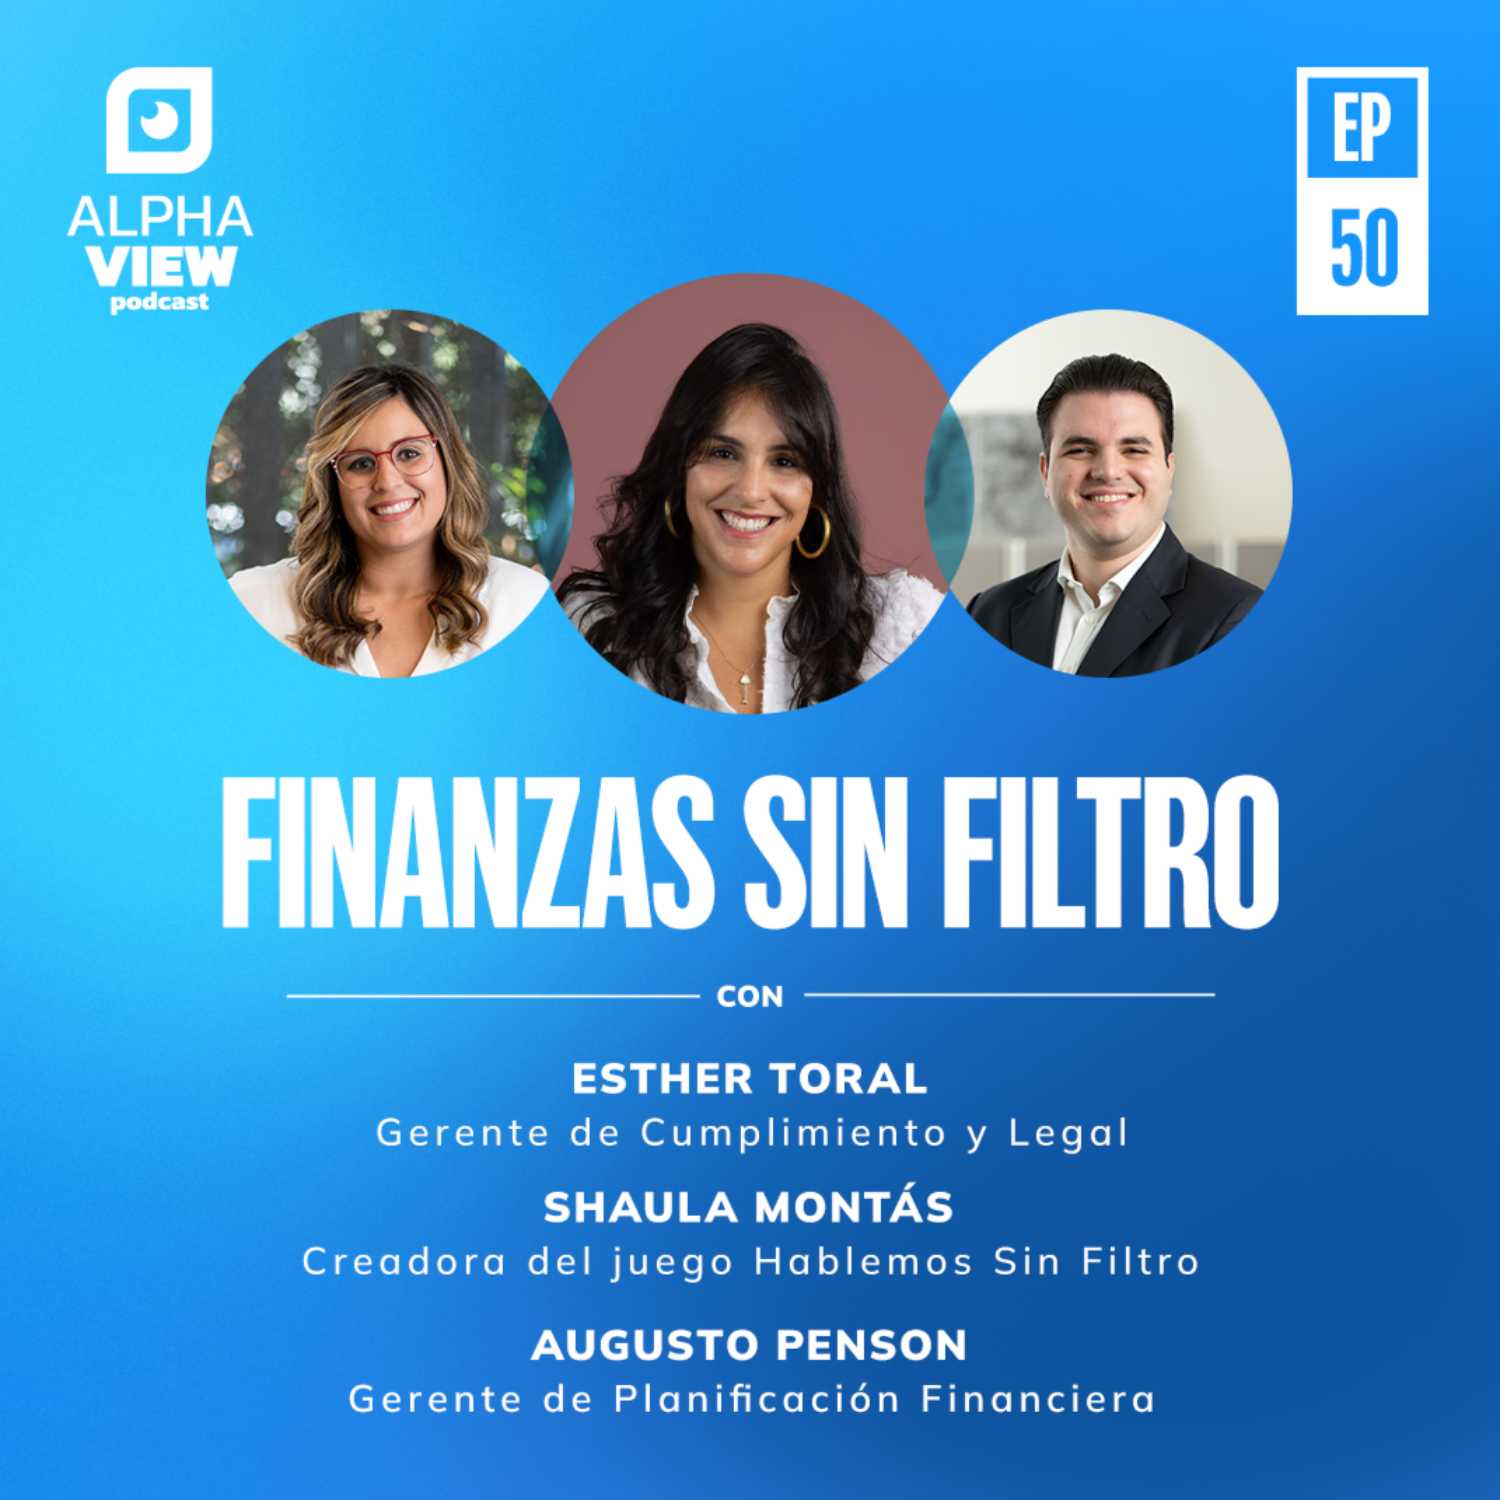 "Finanzas Sin Filtro" con Augusto Penson, Esther Toral y Shaula Montas